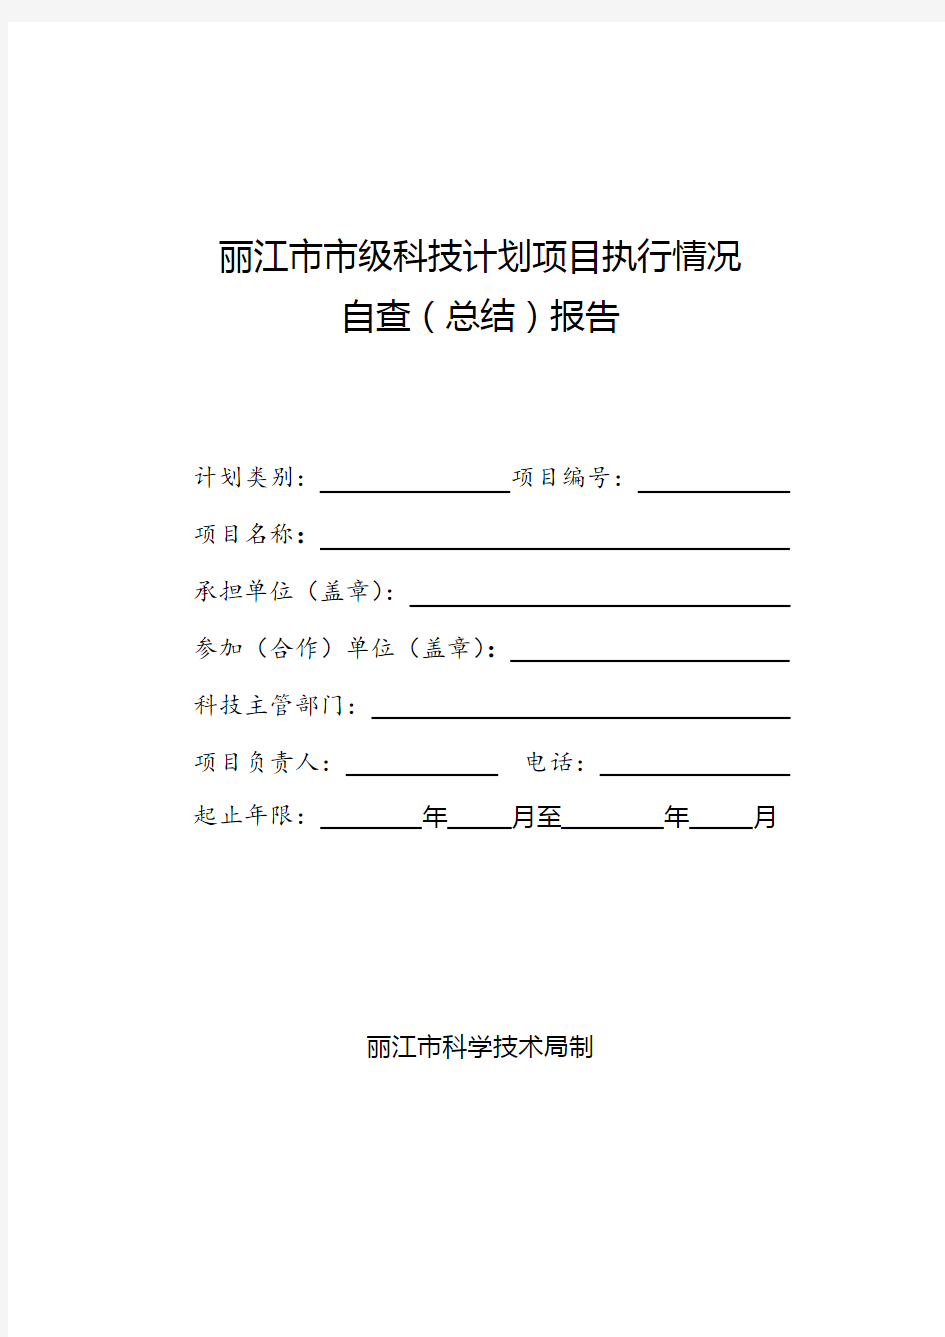 丽江市科技项目执行情况报告(格式)